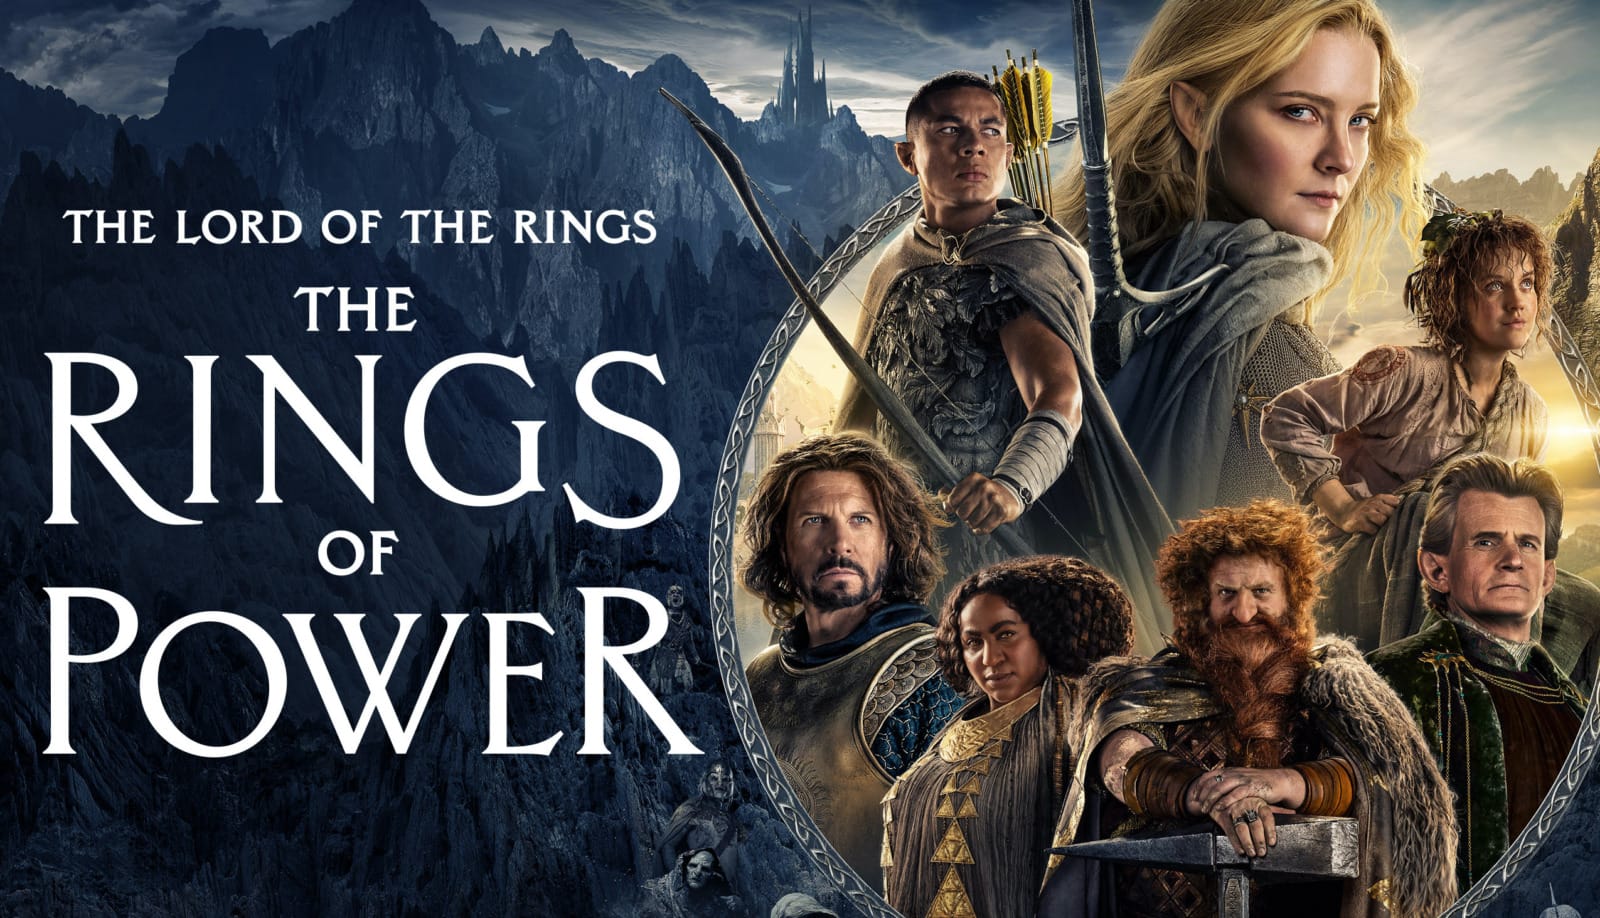 อันดับ 1 &Quot;Lord Of The Rings: The Rings Of Power&Quot; ตอนละ 2.07 พันล้านบาท